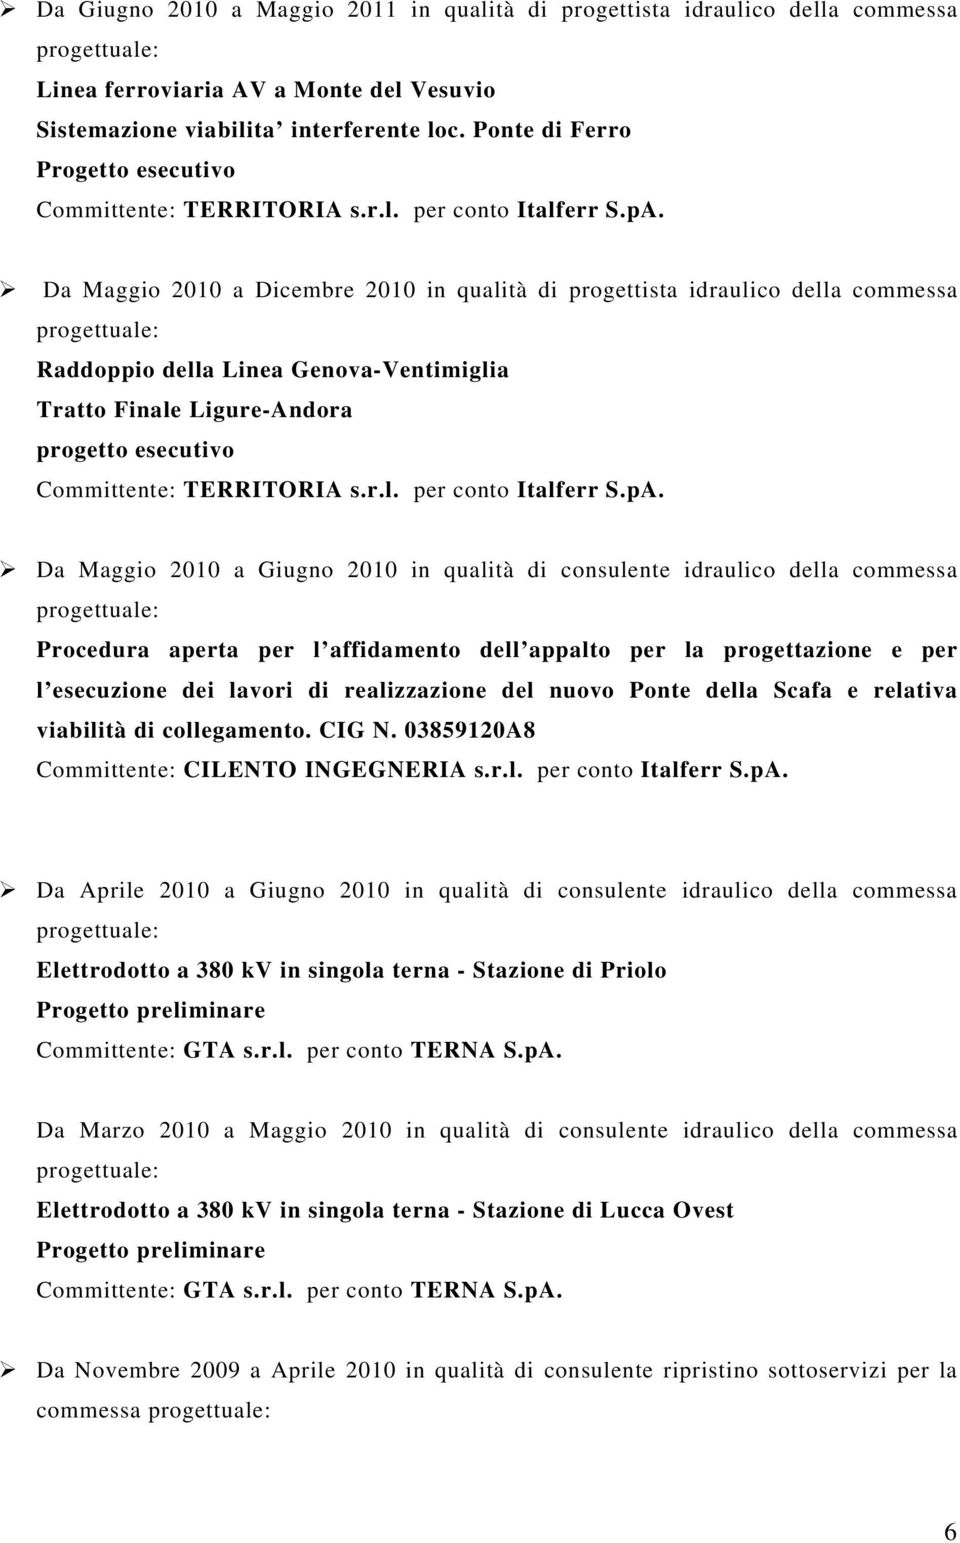 Da Maggio 2010 a Dicembre 2010 in qualità di progettista idraulico della commessa Raddoppio della Linea Genova-Ventimiglia Tratto Finale Ligure-Andora progetto esecutivo Committente: TERRITORIA s.r.l. per conto Italferr S.